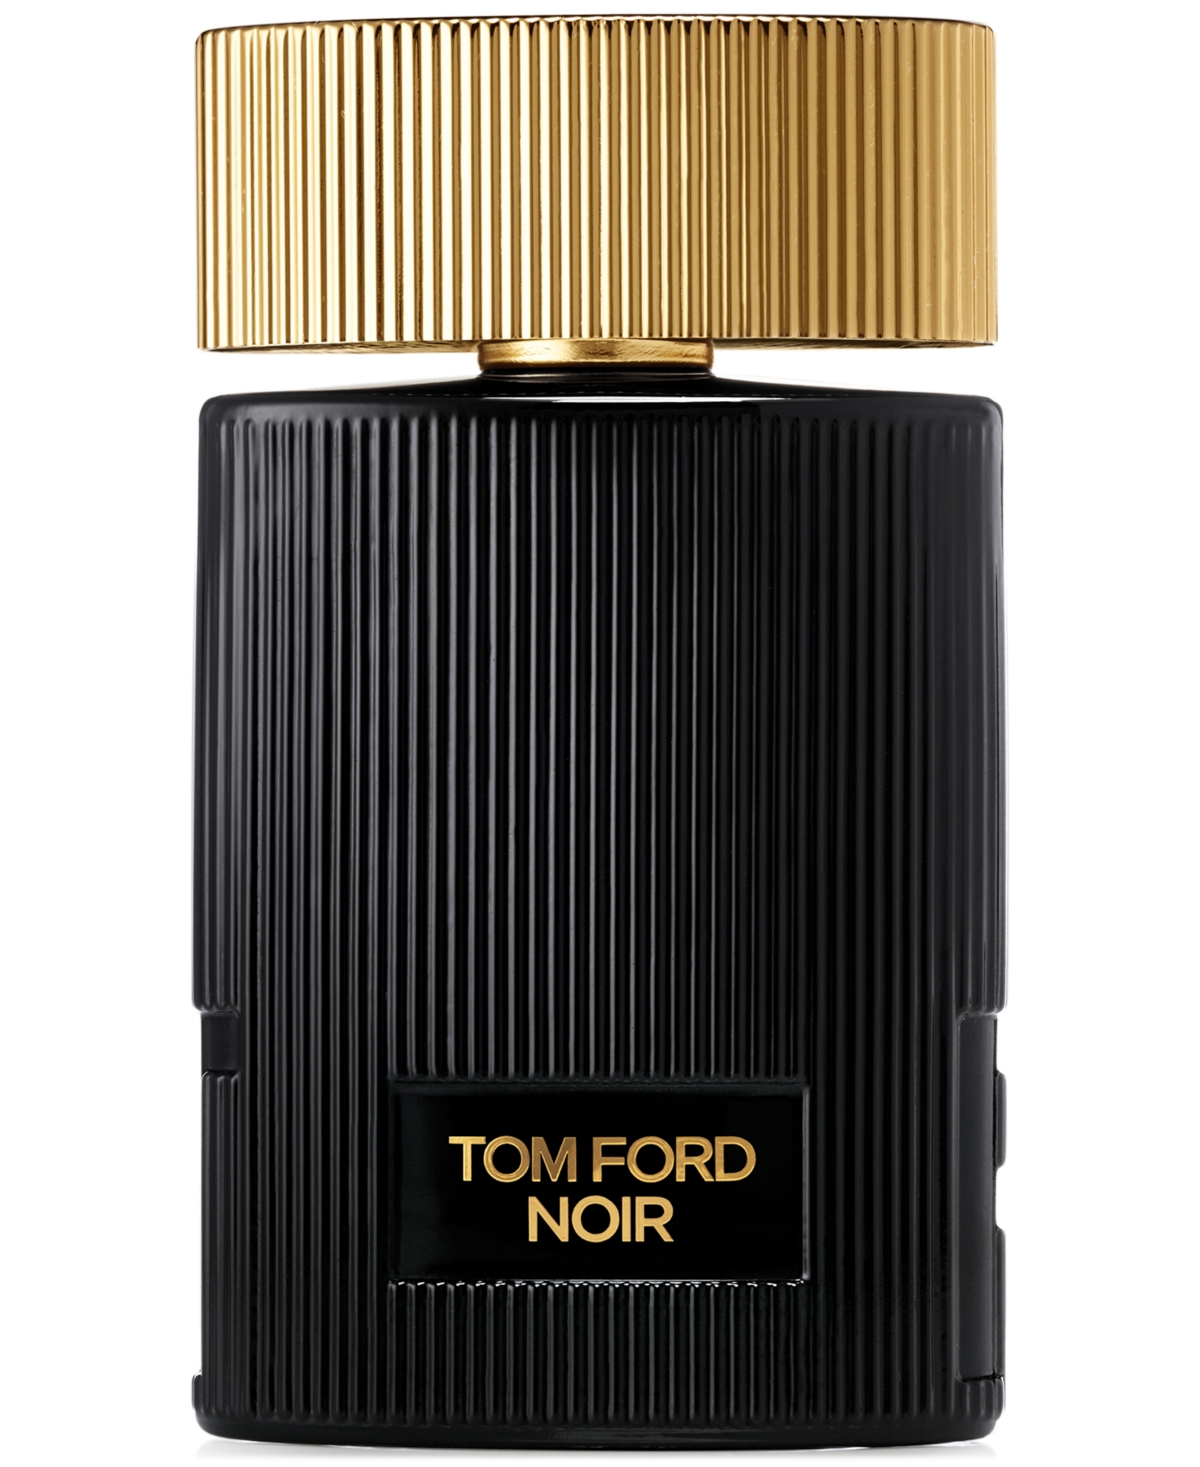 UPC 888066034623 product image for Tom Ford Noir Pour Femme Eau de Parfum, 1.7 oz | upcitemdb.com